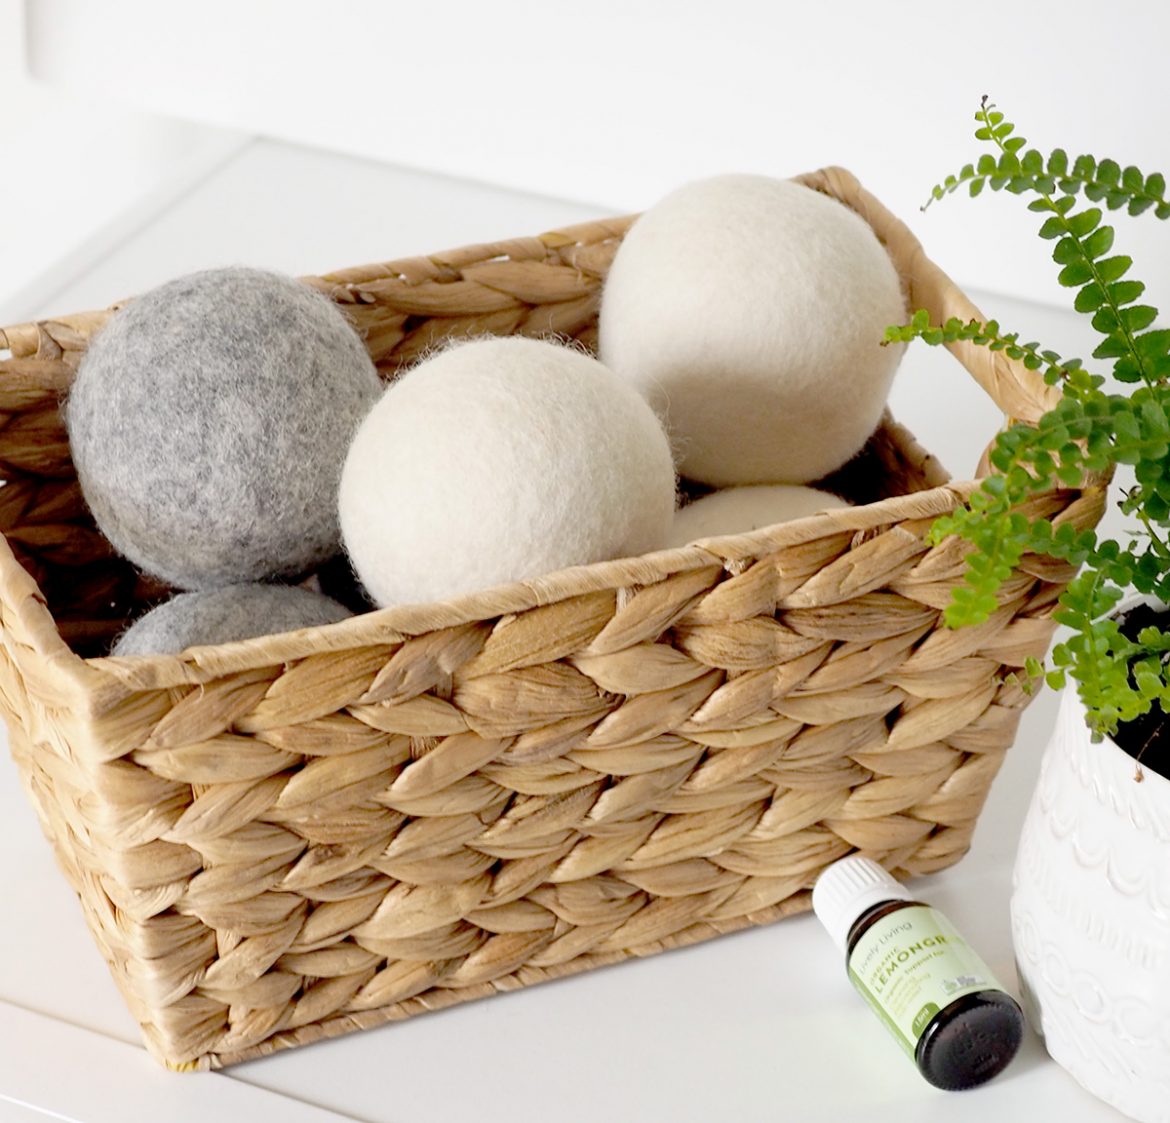 Organic merino wool balls for dryer